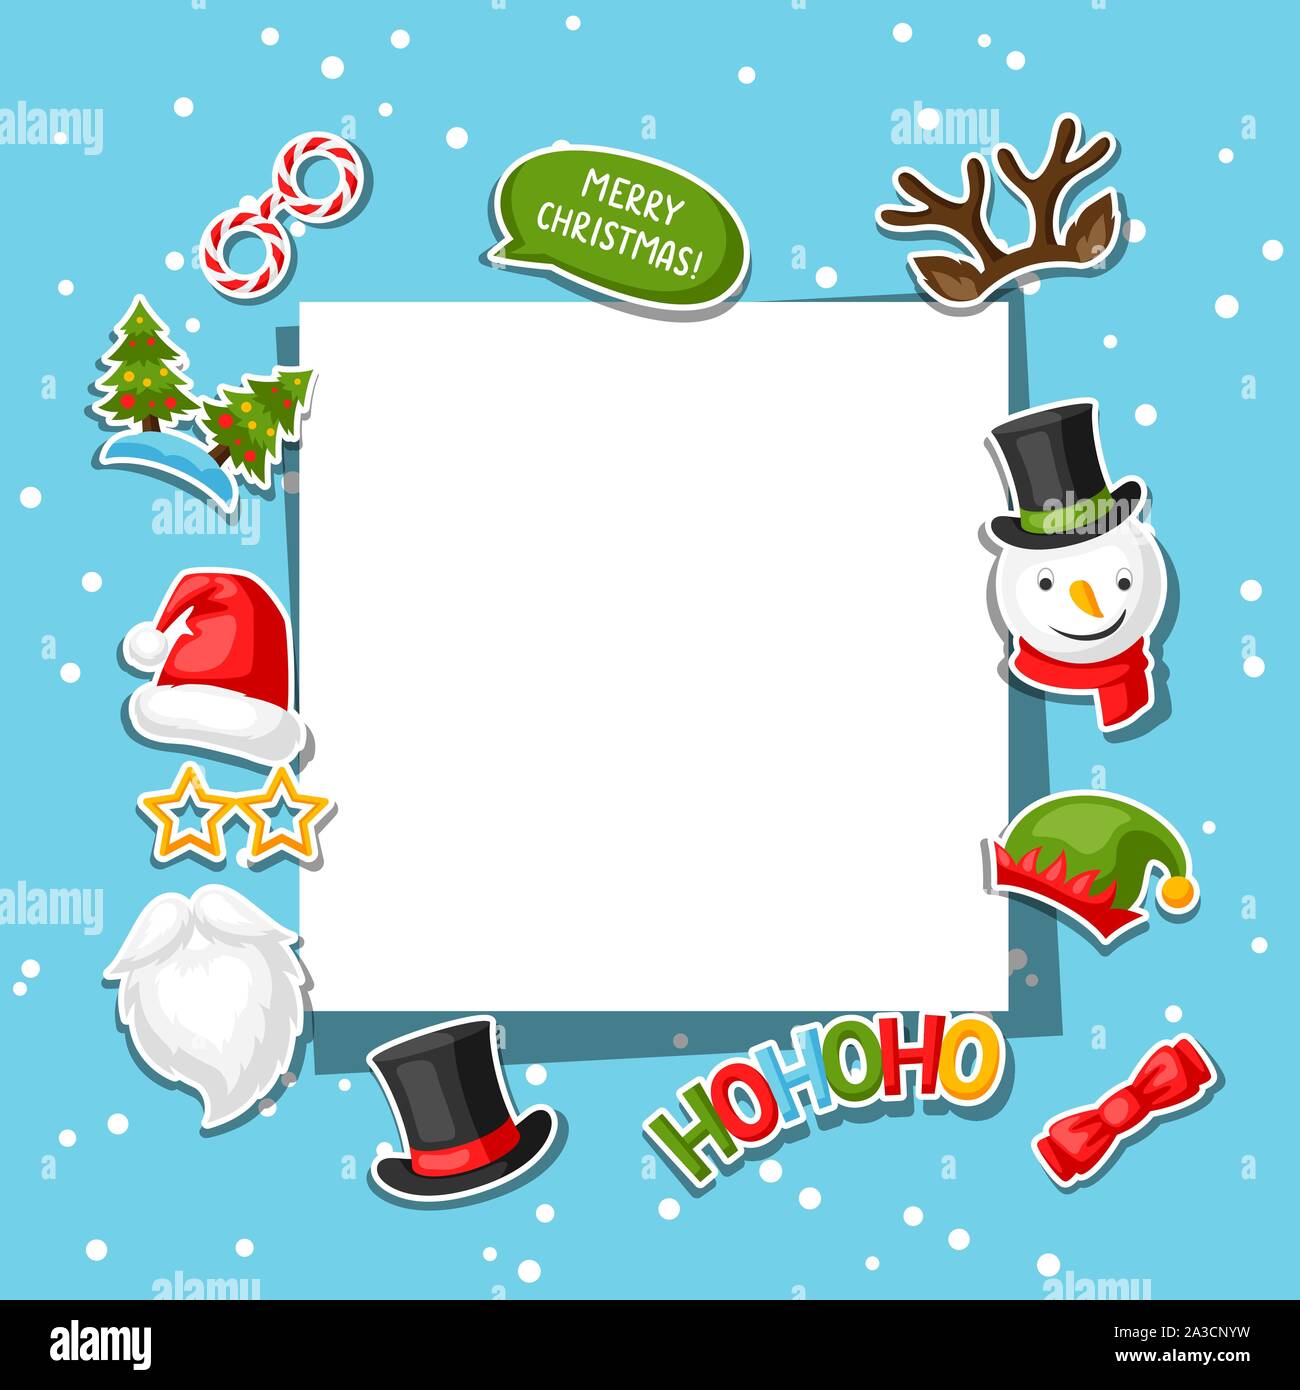 Weihnachtskarte mit Photo Booth Aufkleber. Stock Vektor